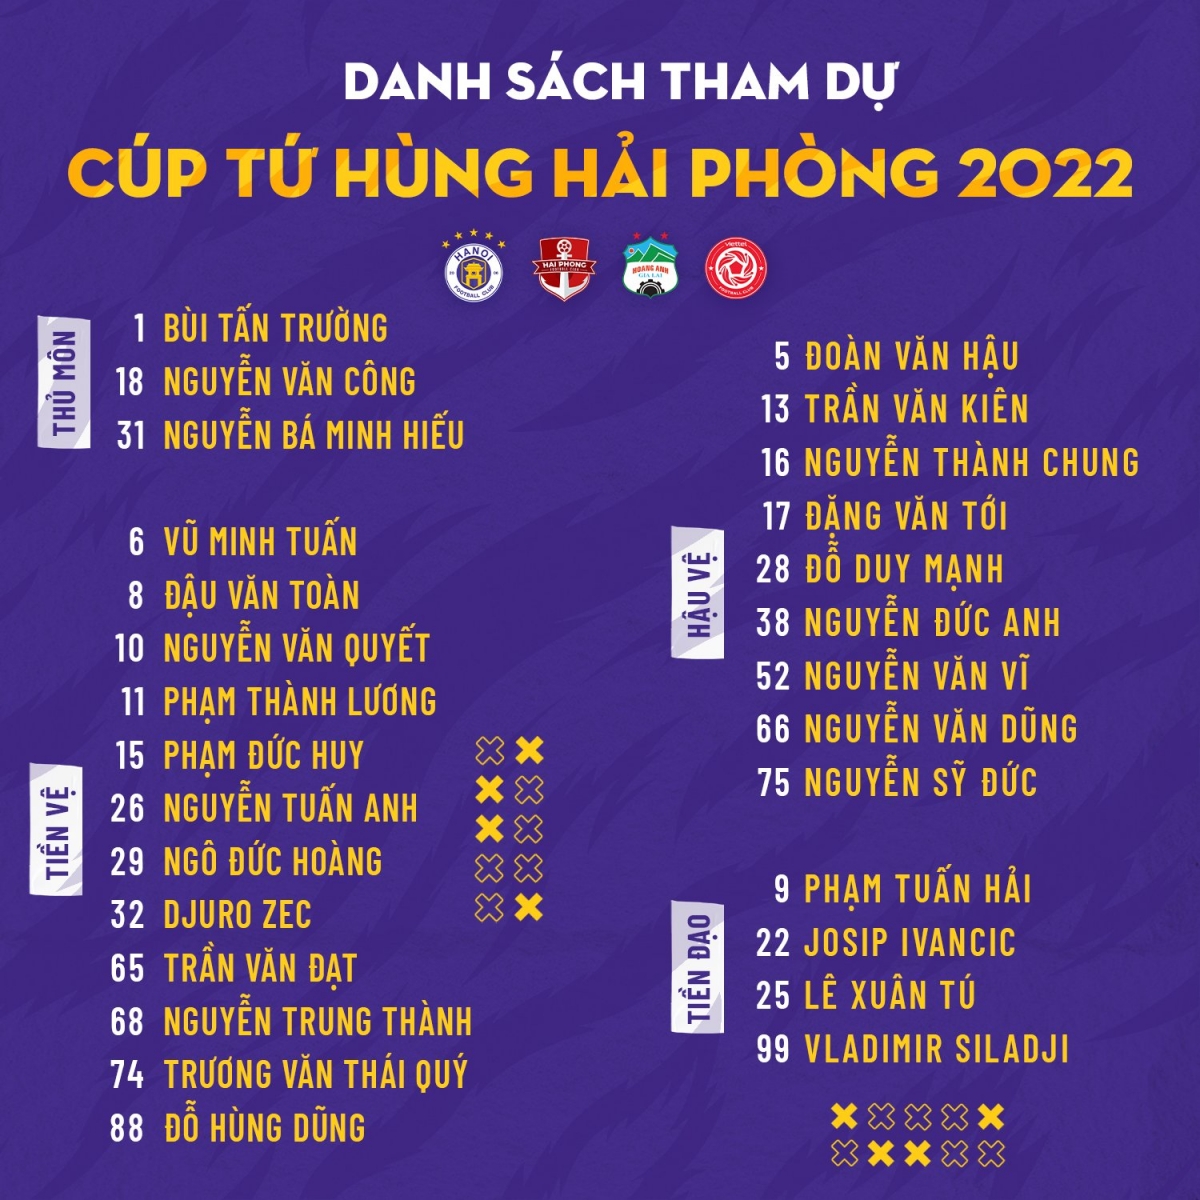 ĐT Việt Nam nhận tin xấu từ Đoàn Văn Hậu, HLV Park phải thay đổi kế hoạch quan trọng nhất năm 2022